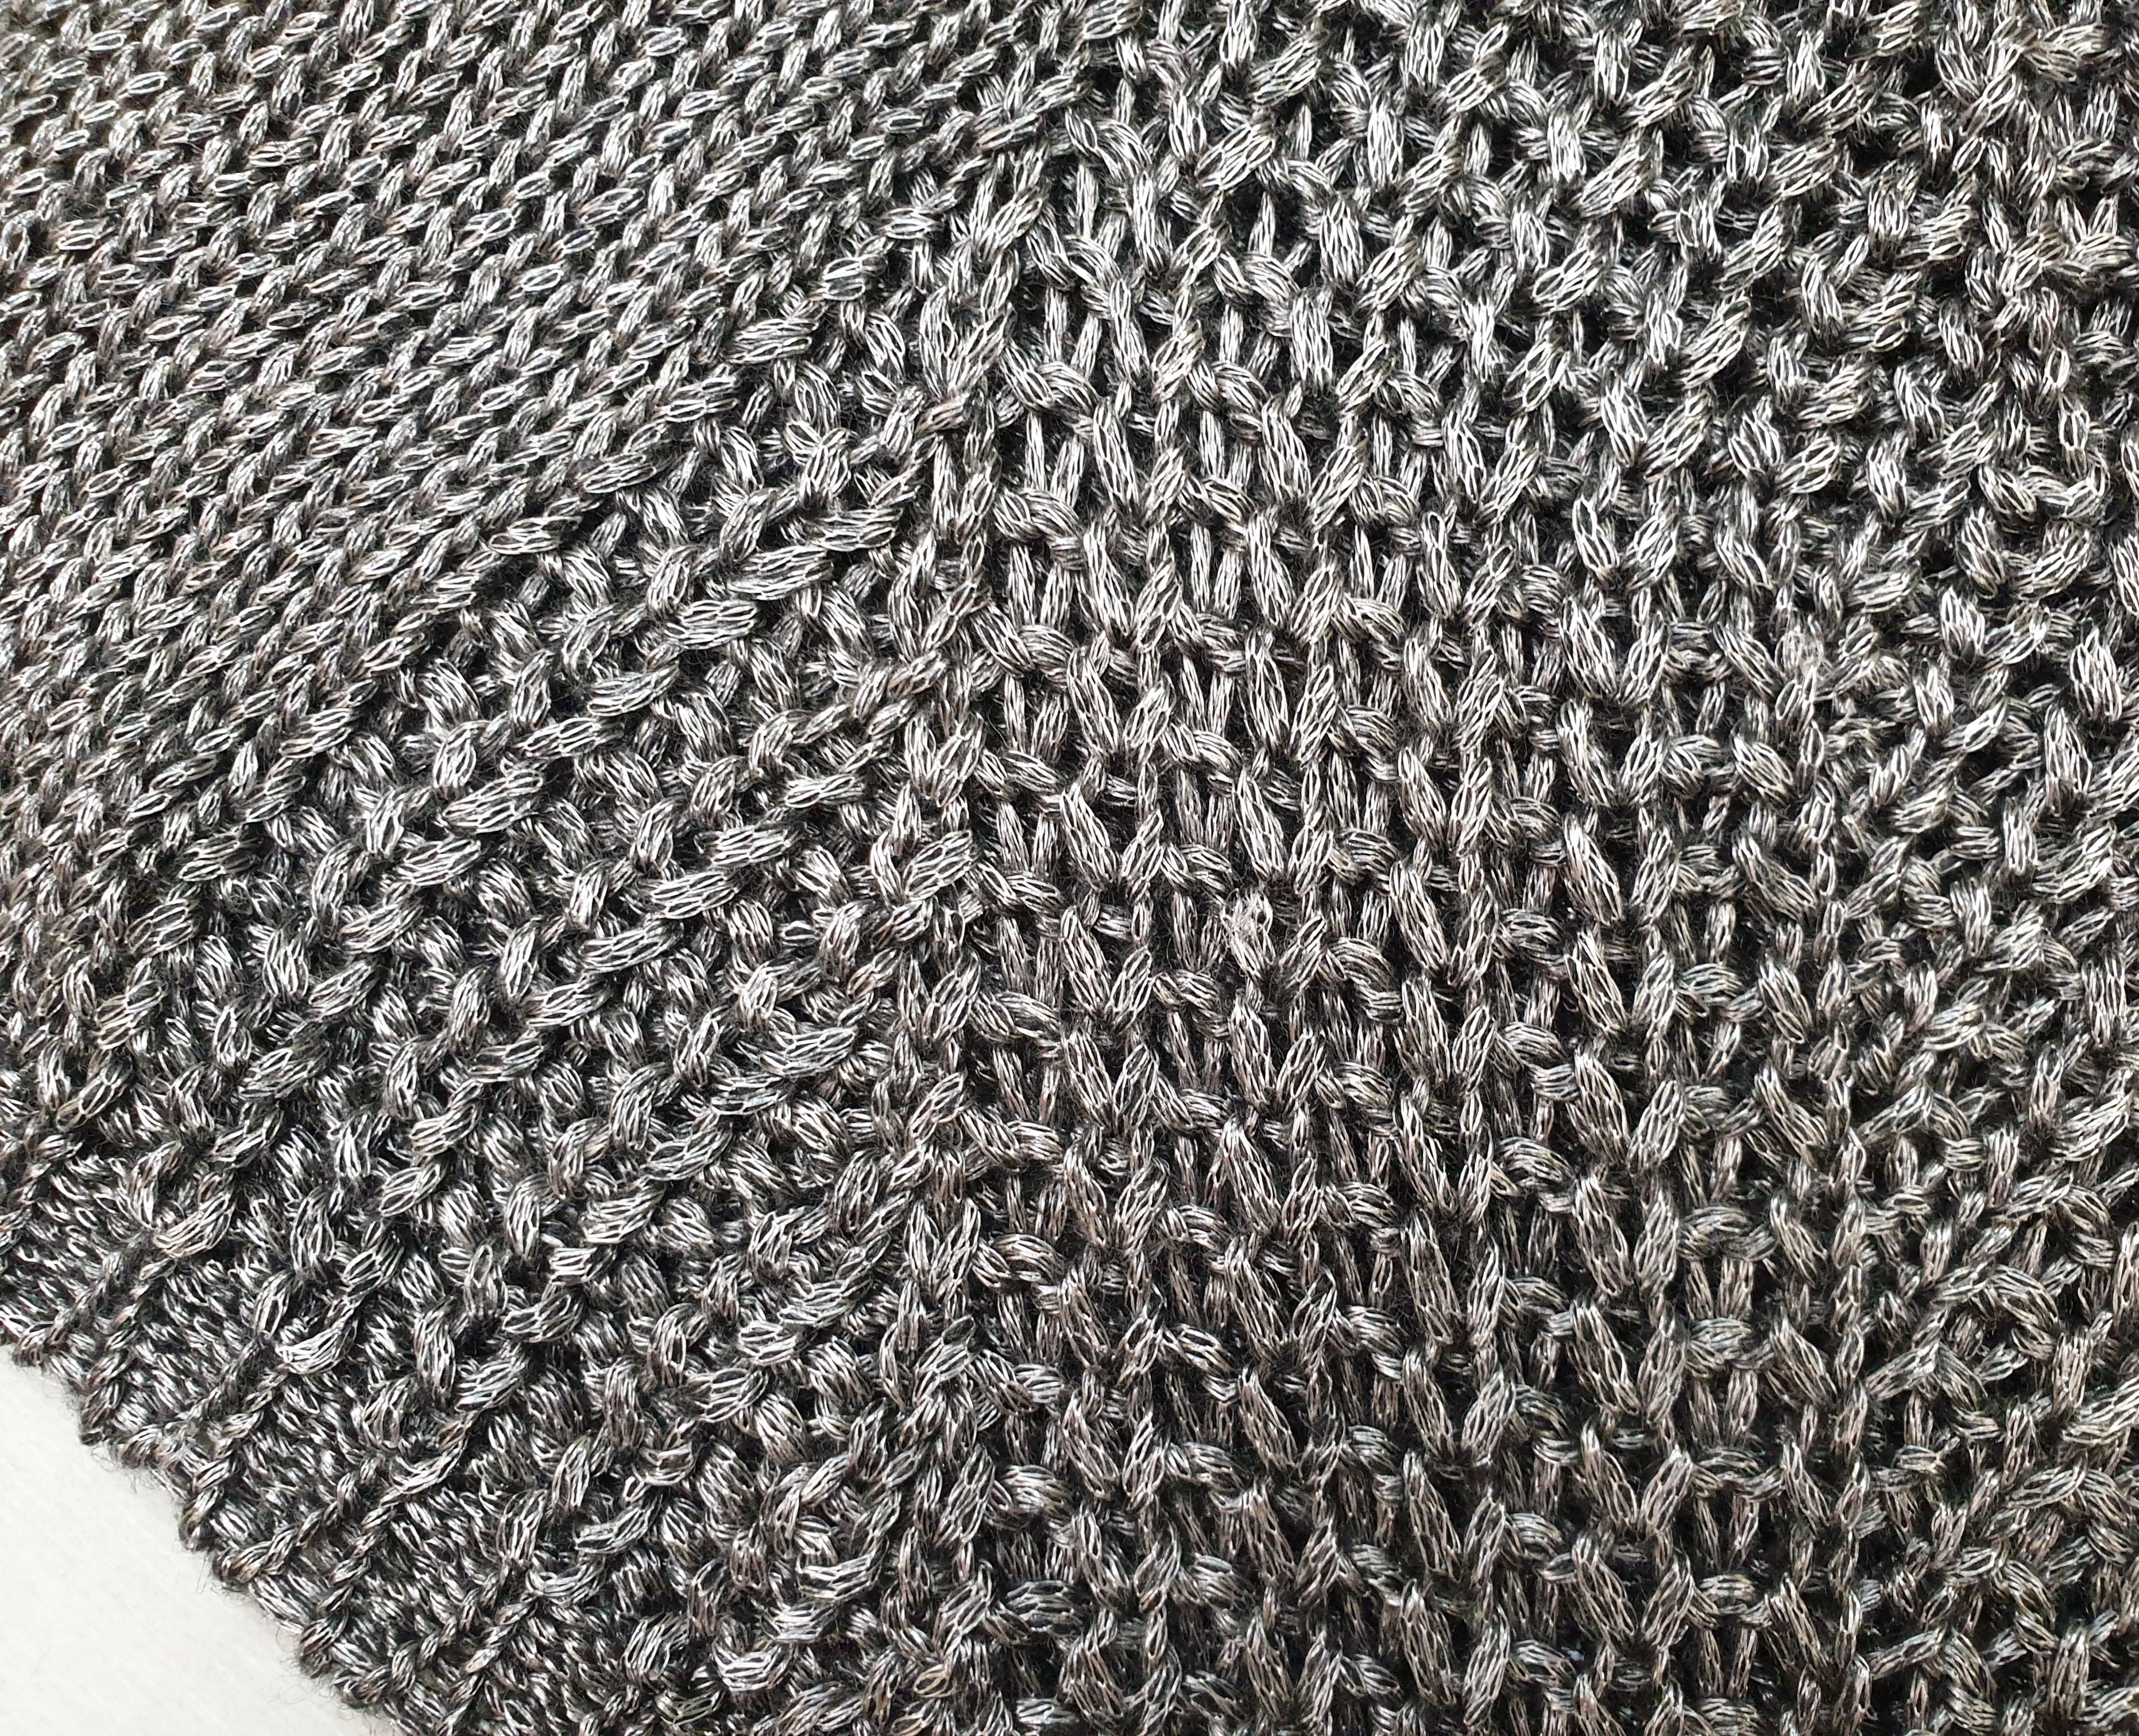 Maglione fili metal